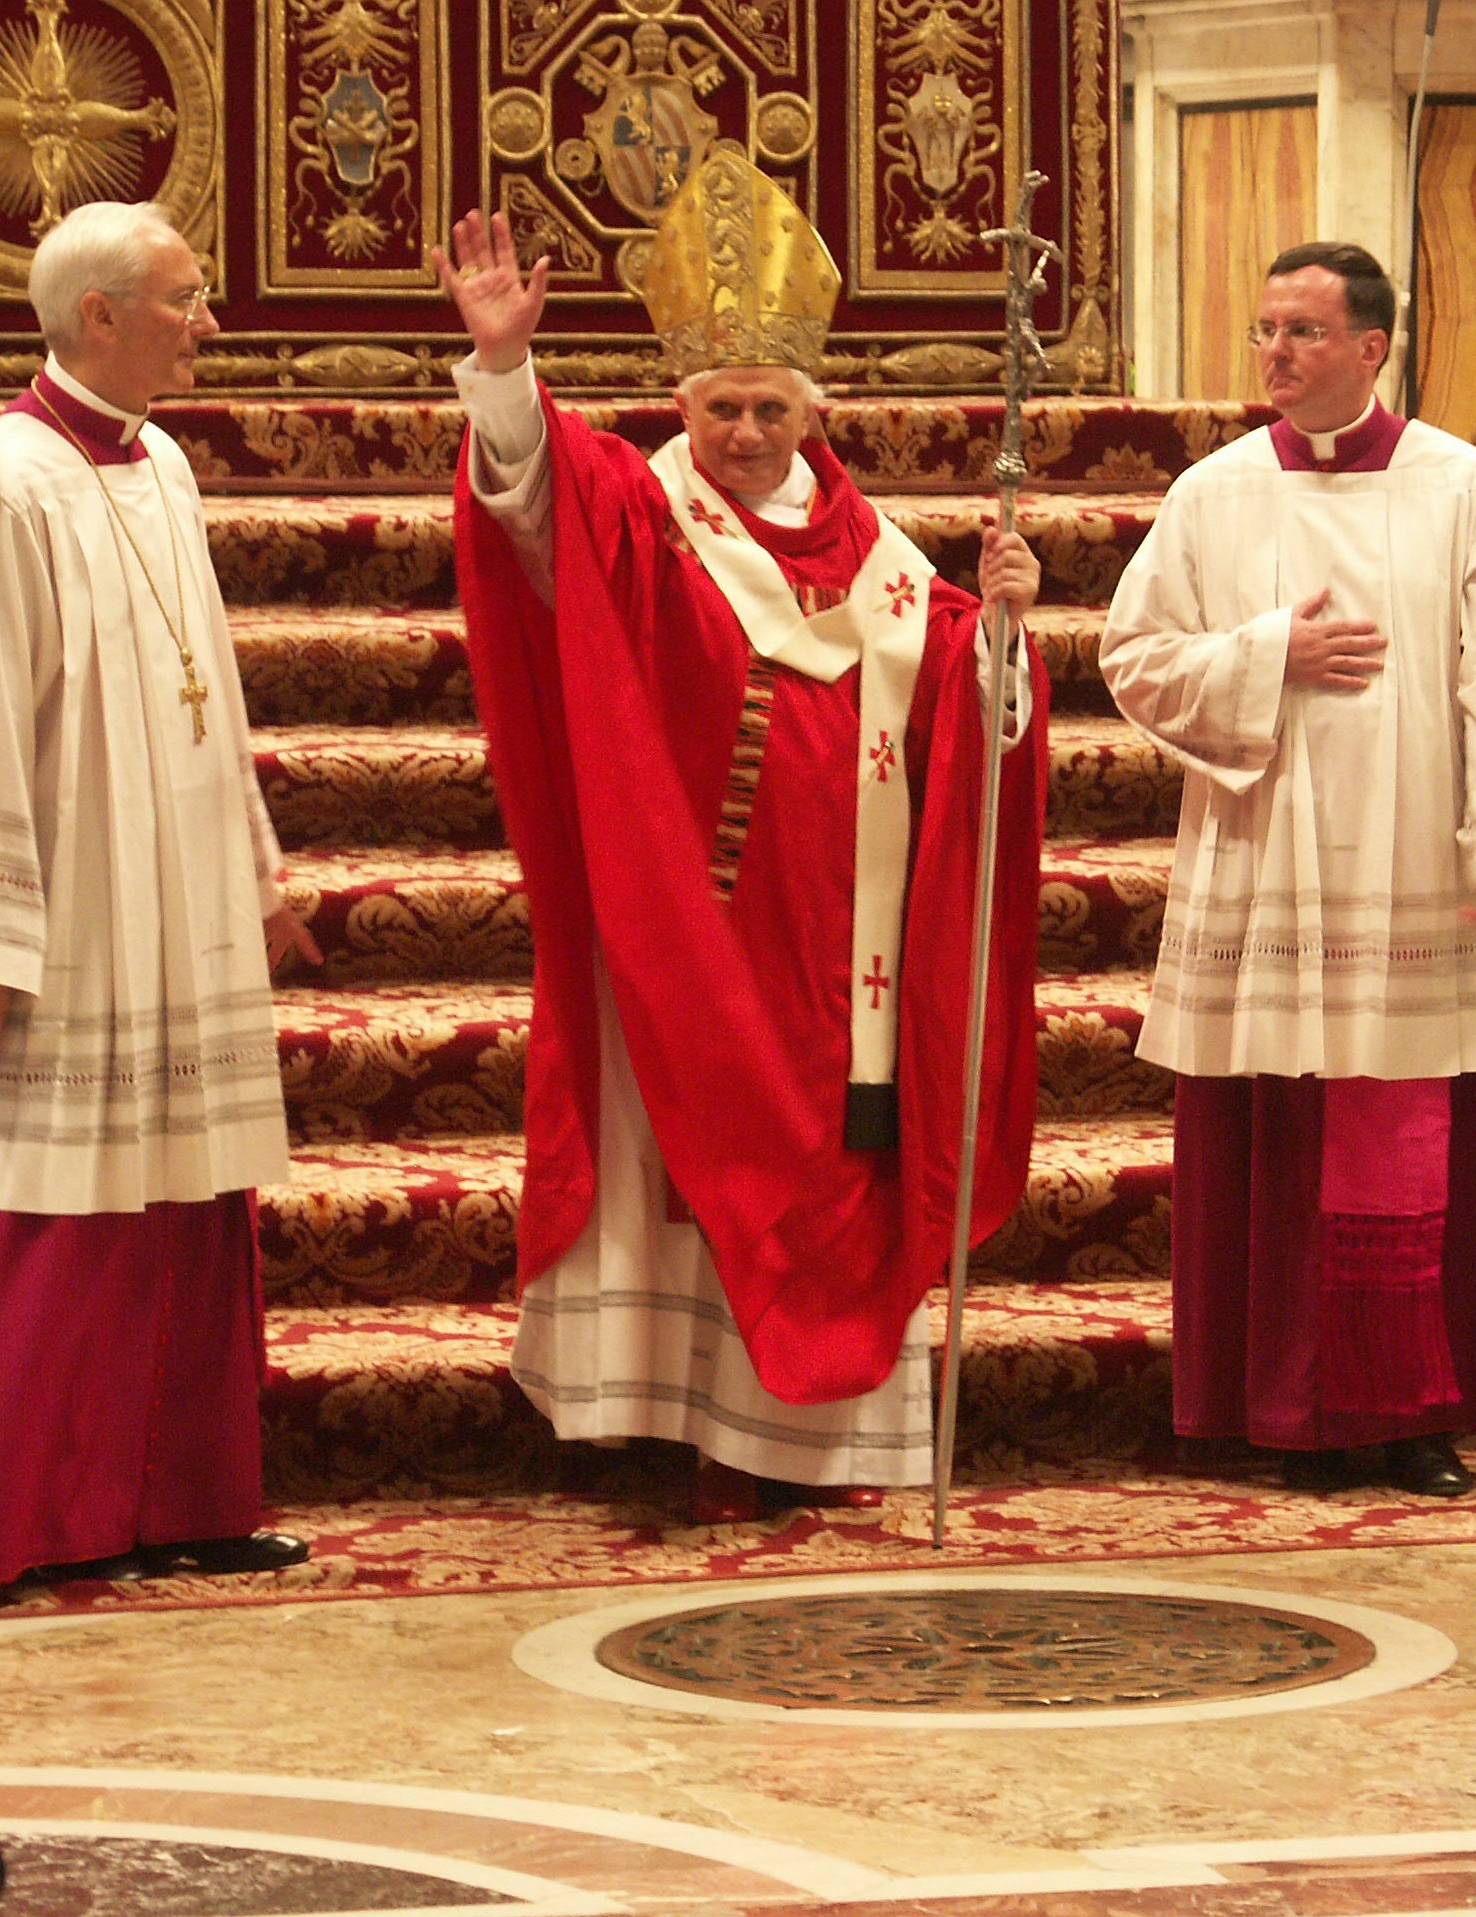 His Holiness Benedict XVI, Pope Emeritus